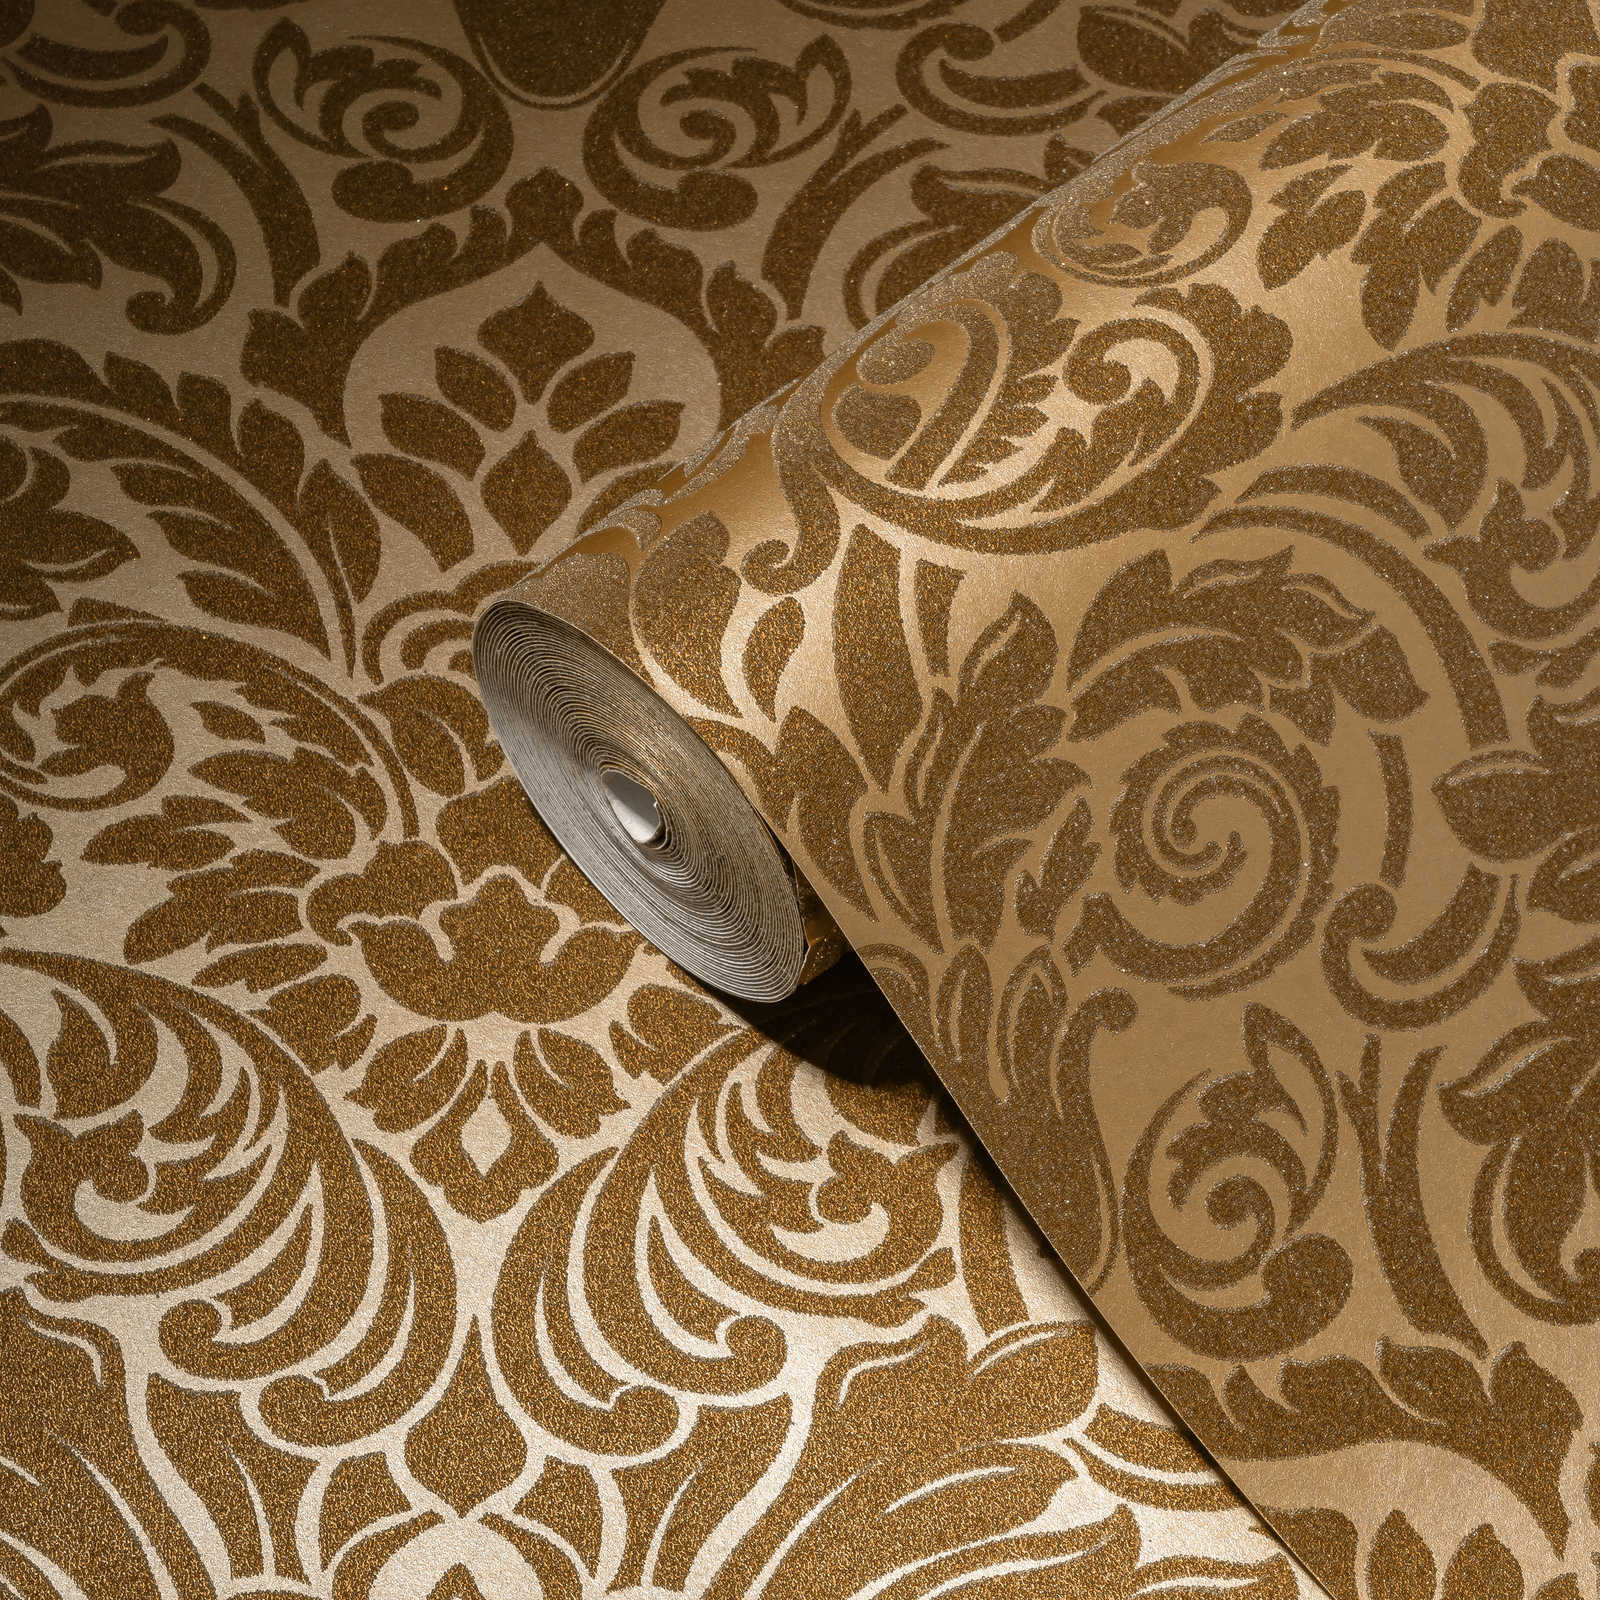             Ornamenteel behang met metallic effect & bloemmotief - goud
        